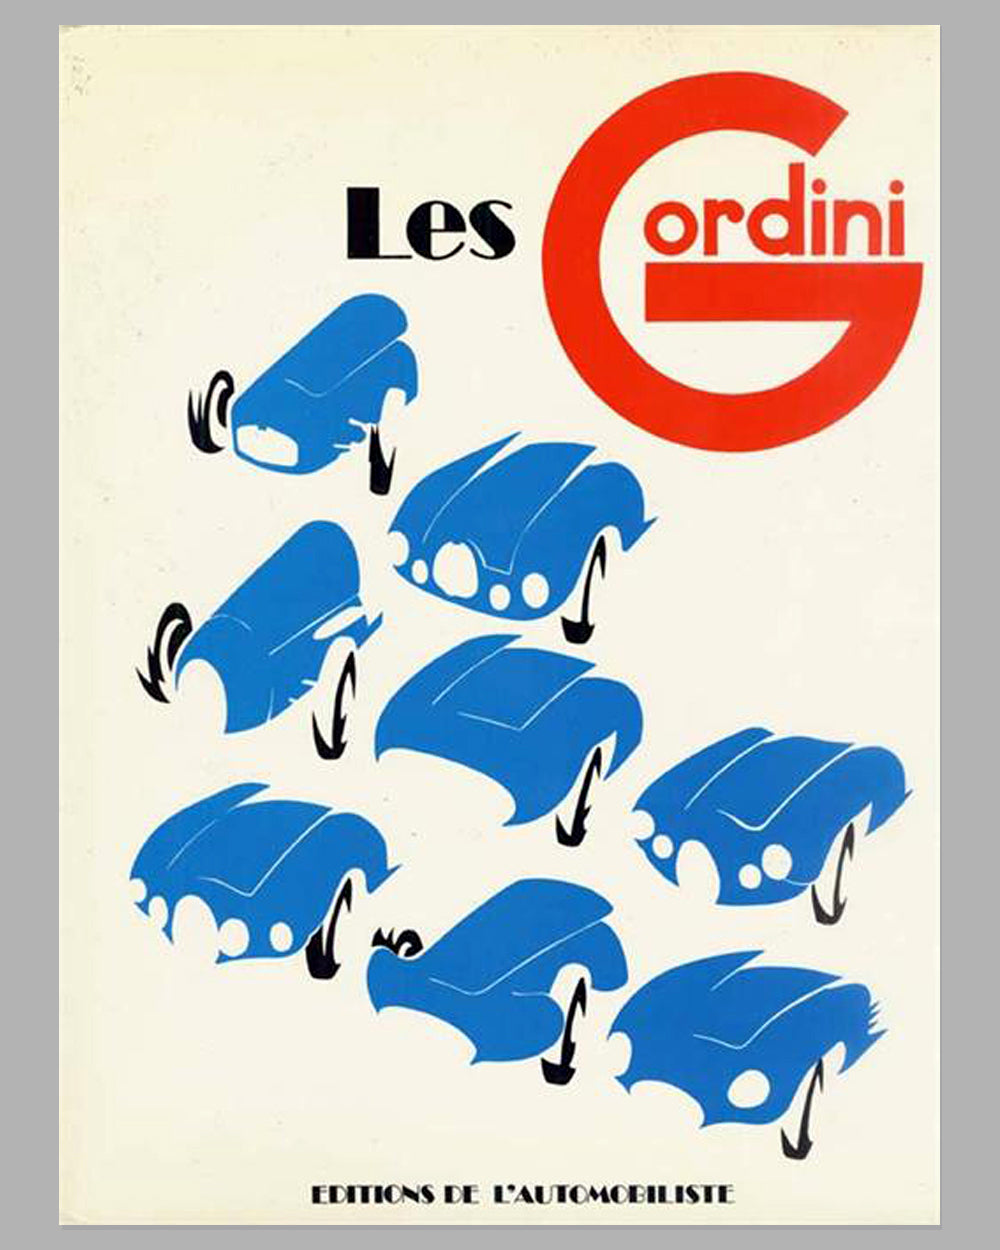 Les Gordini book by Robert Jarraud, 1983